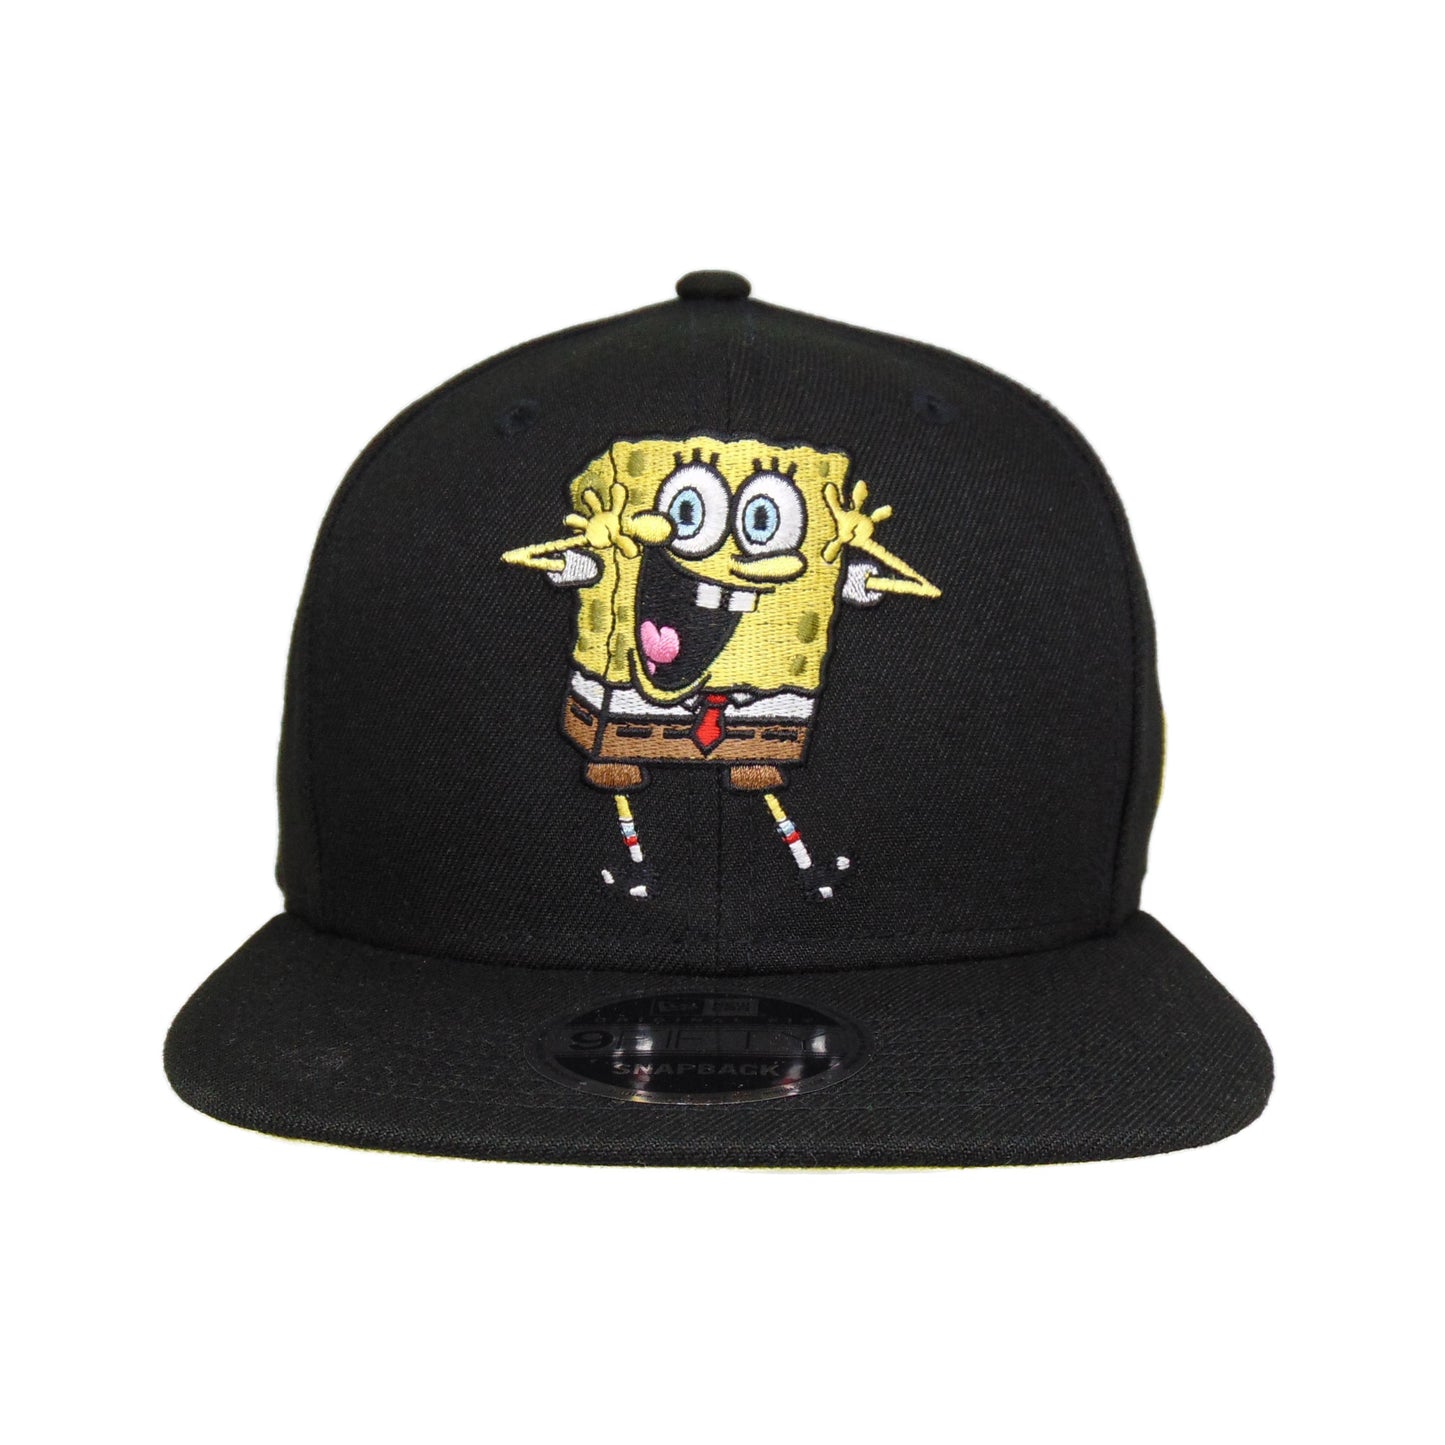 Sponge Bob New Era Snapback 9FIFTY Cap black